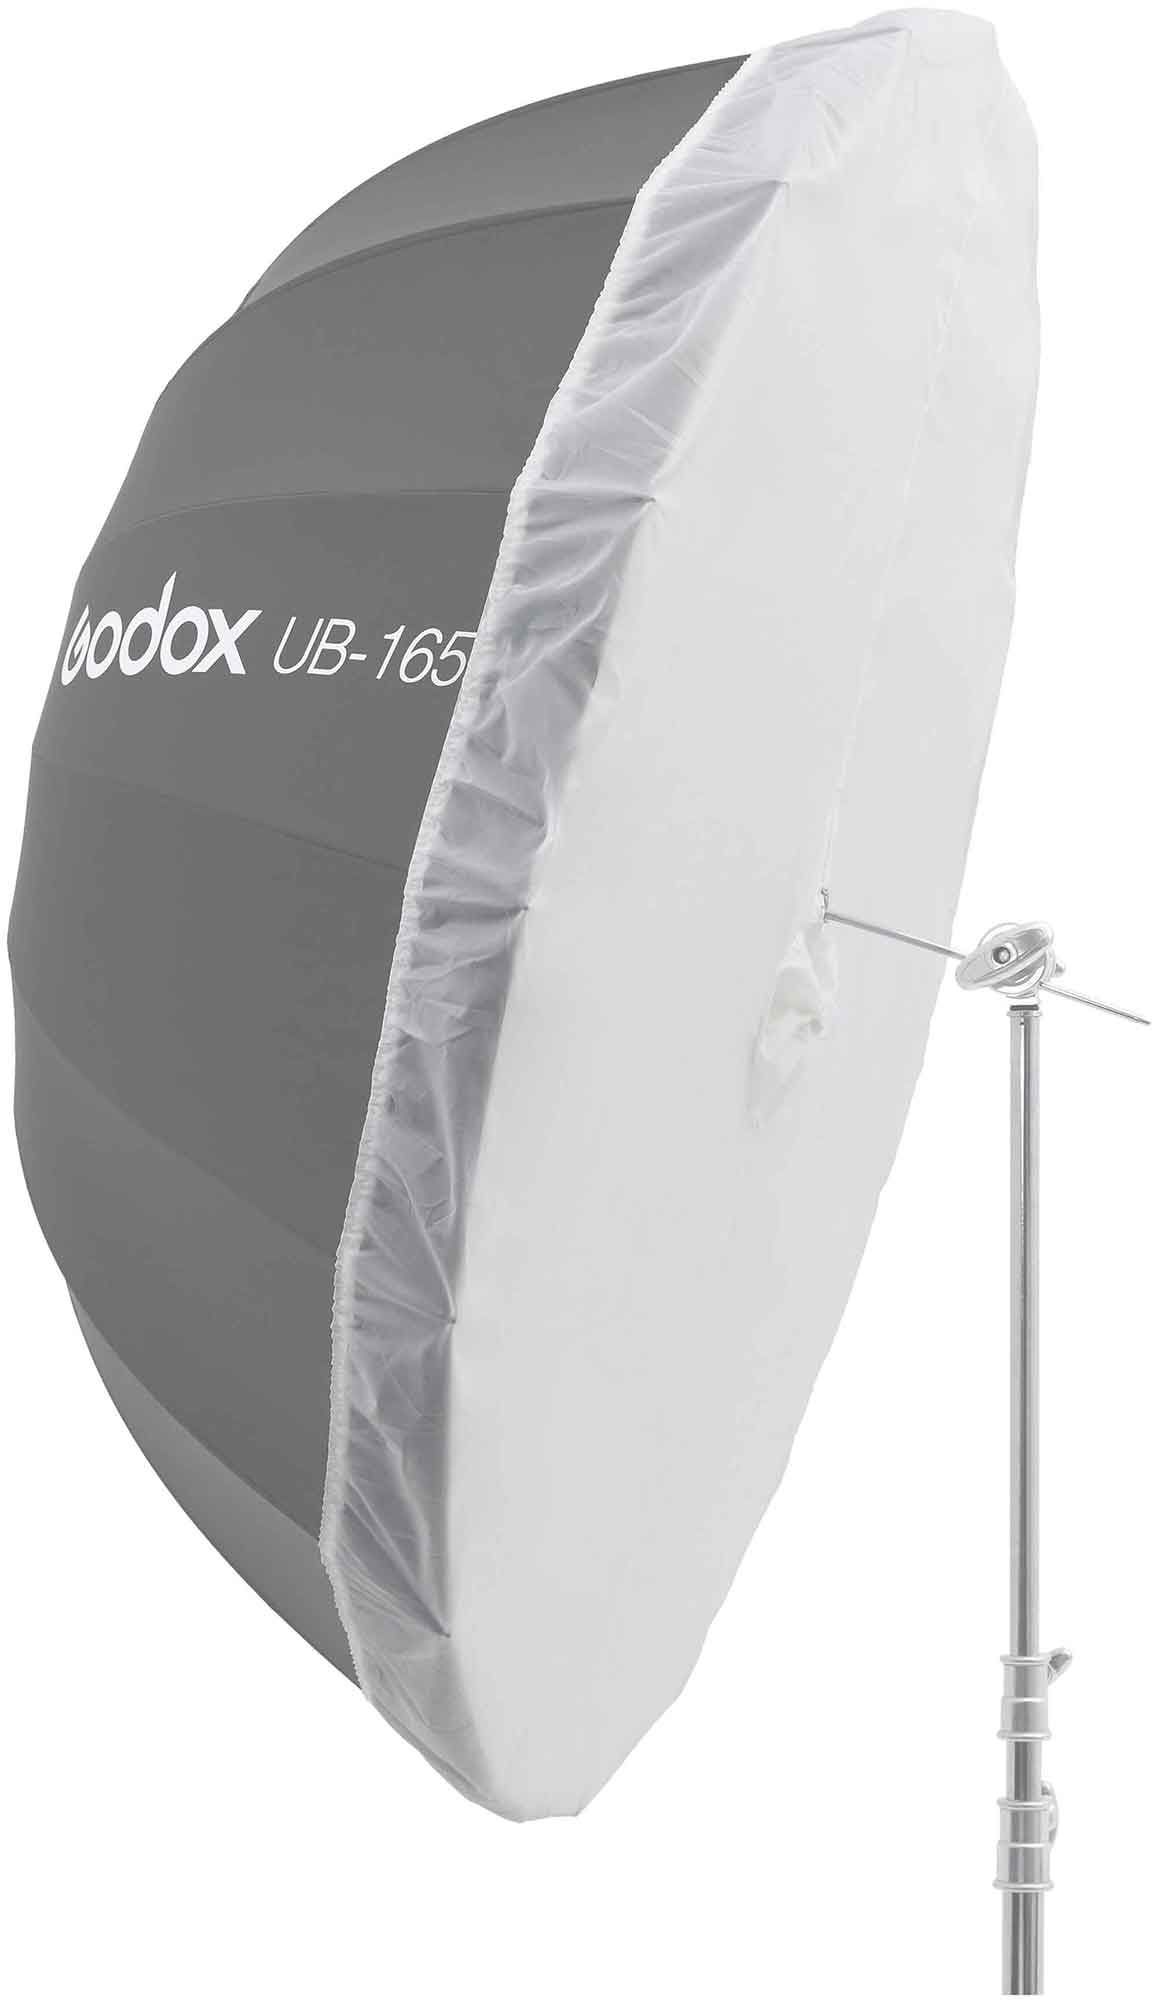 Рассеиватель Godox DPU-165T просветный для фотозонта